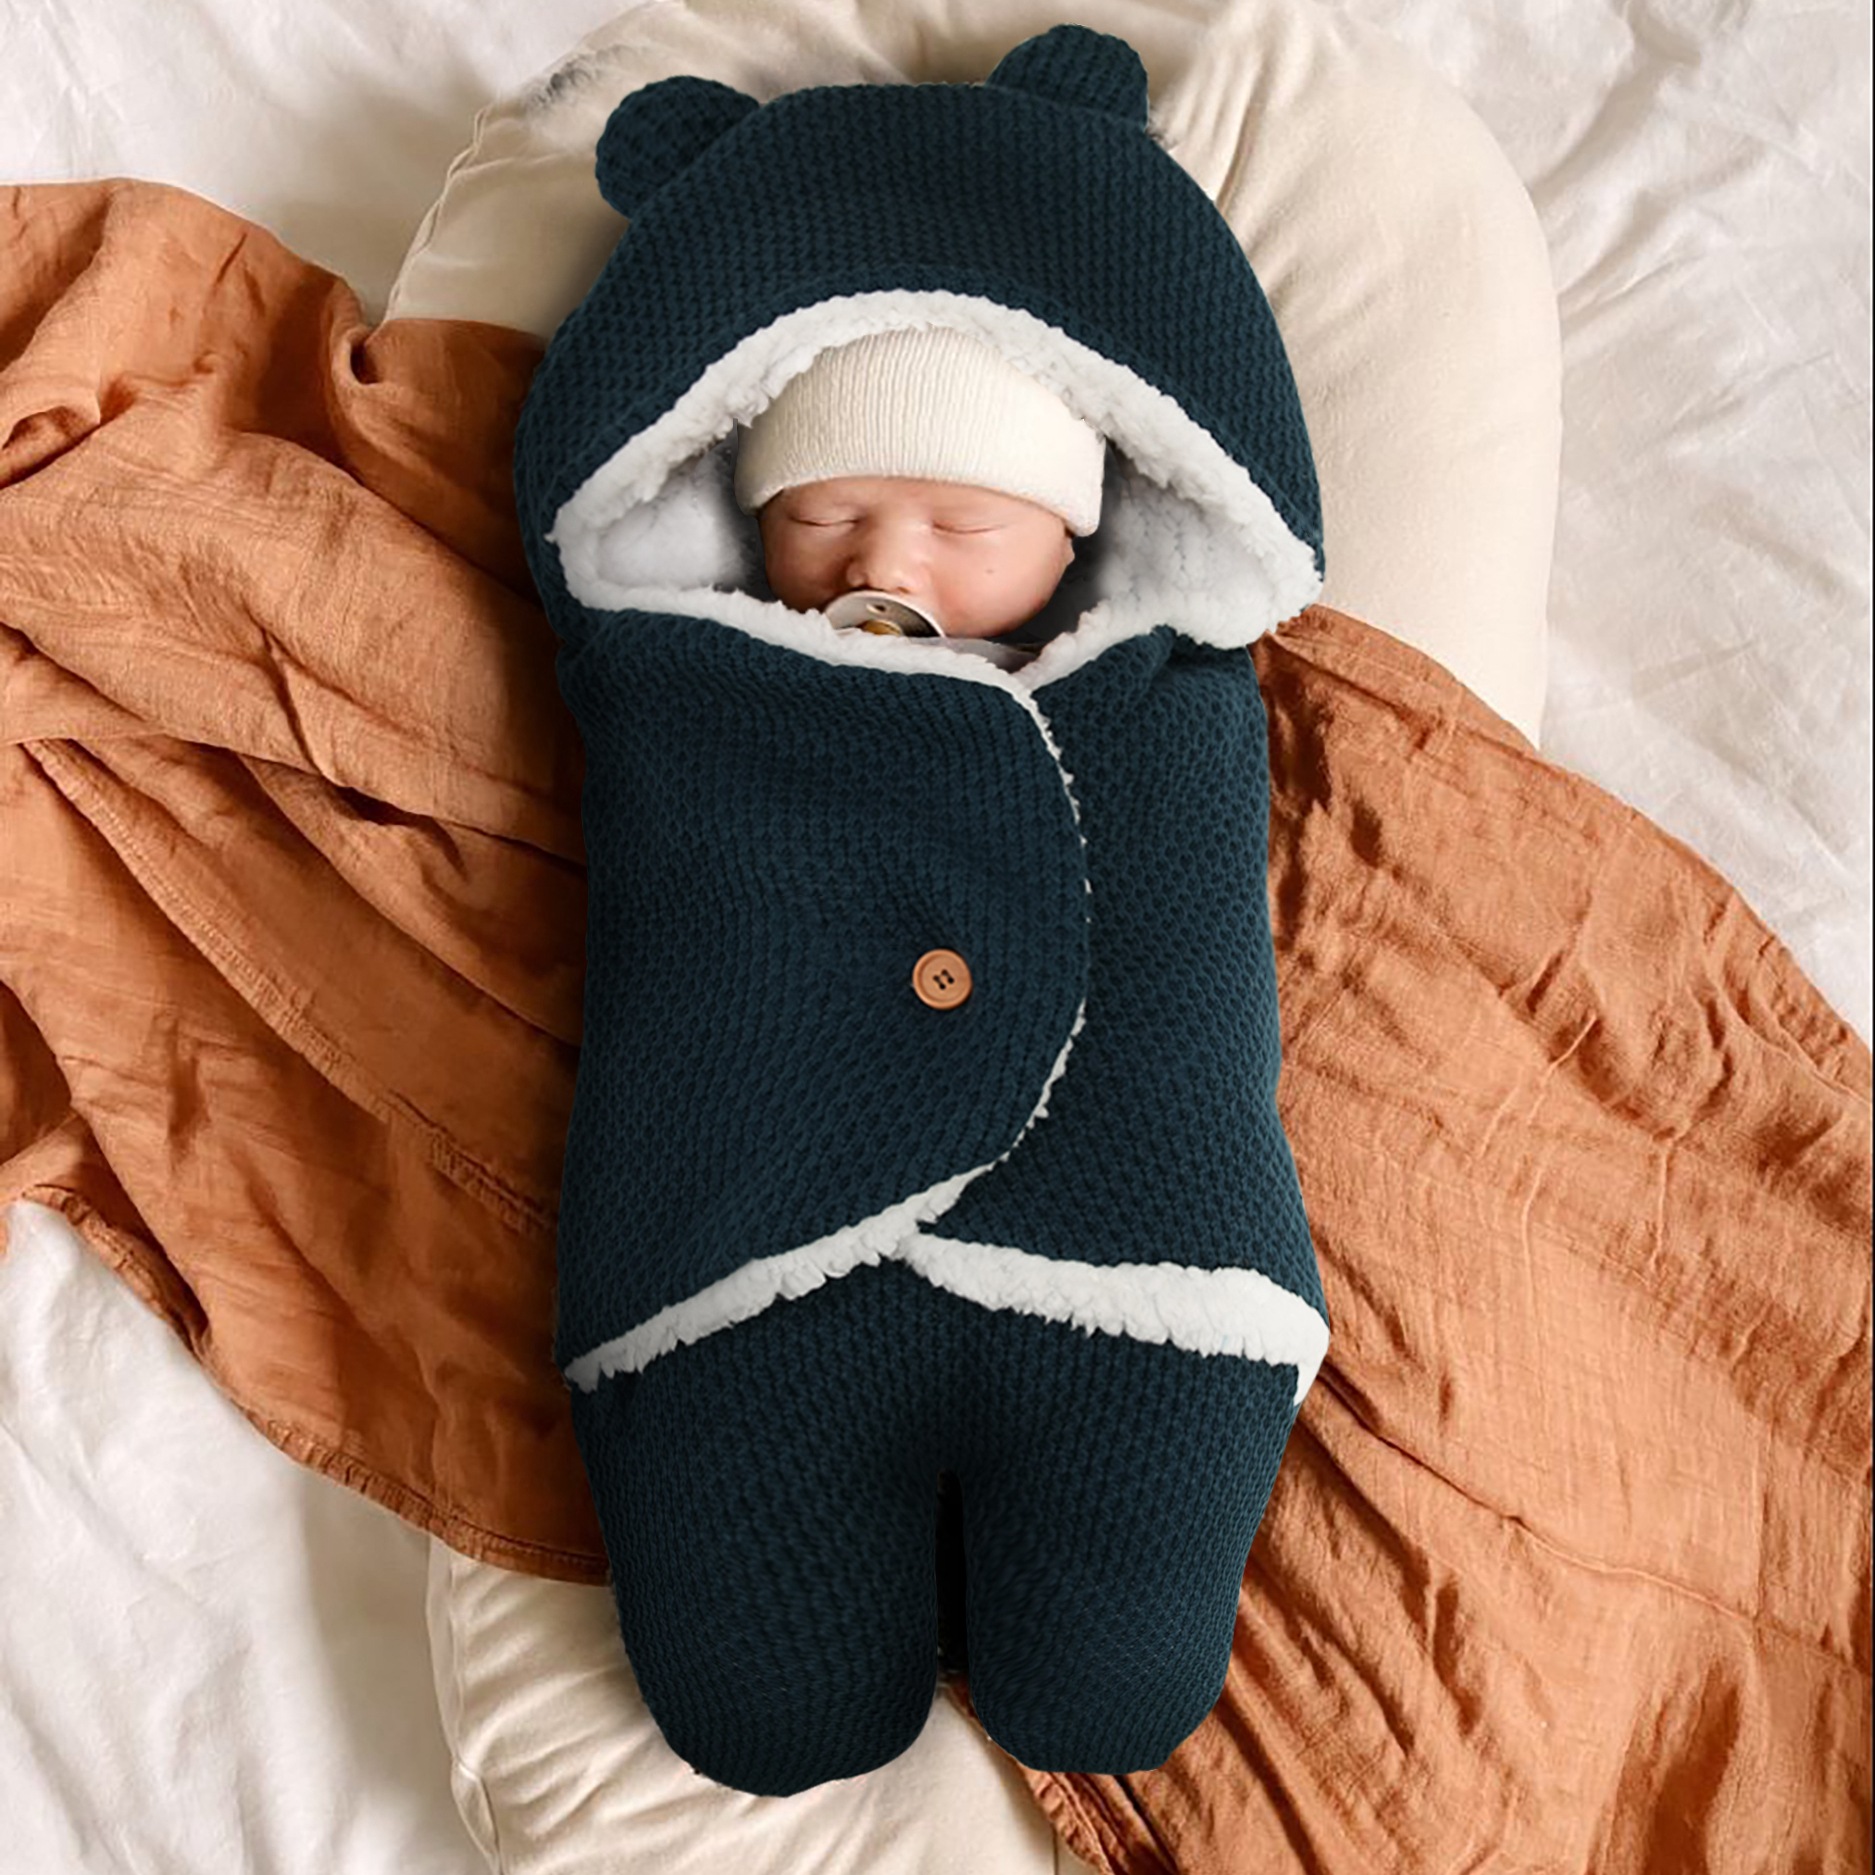 Saco de dormir Bebé Tejido Muselina - 2.5 Togs - 0 a 6 meses